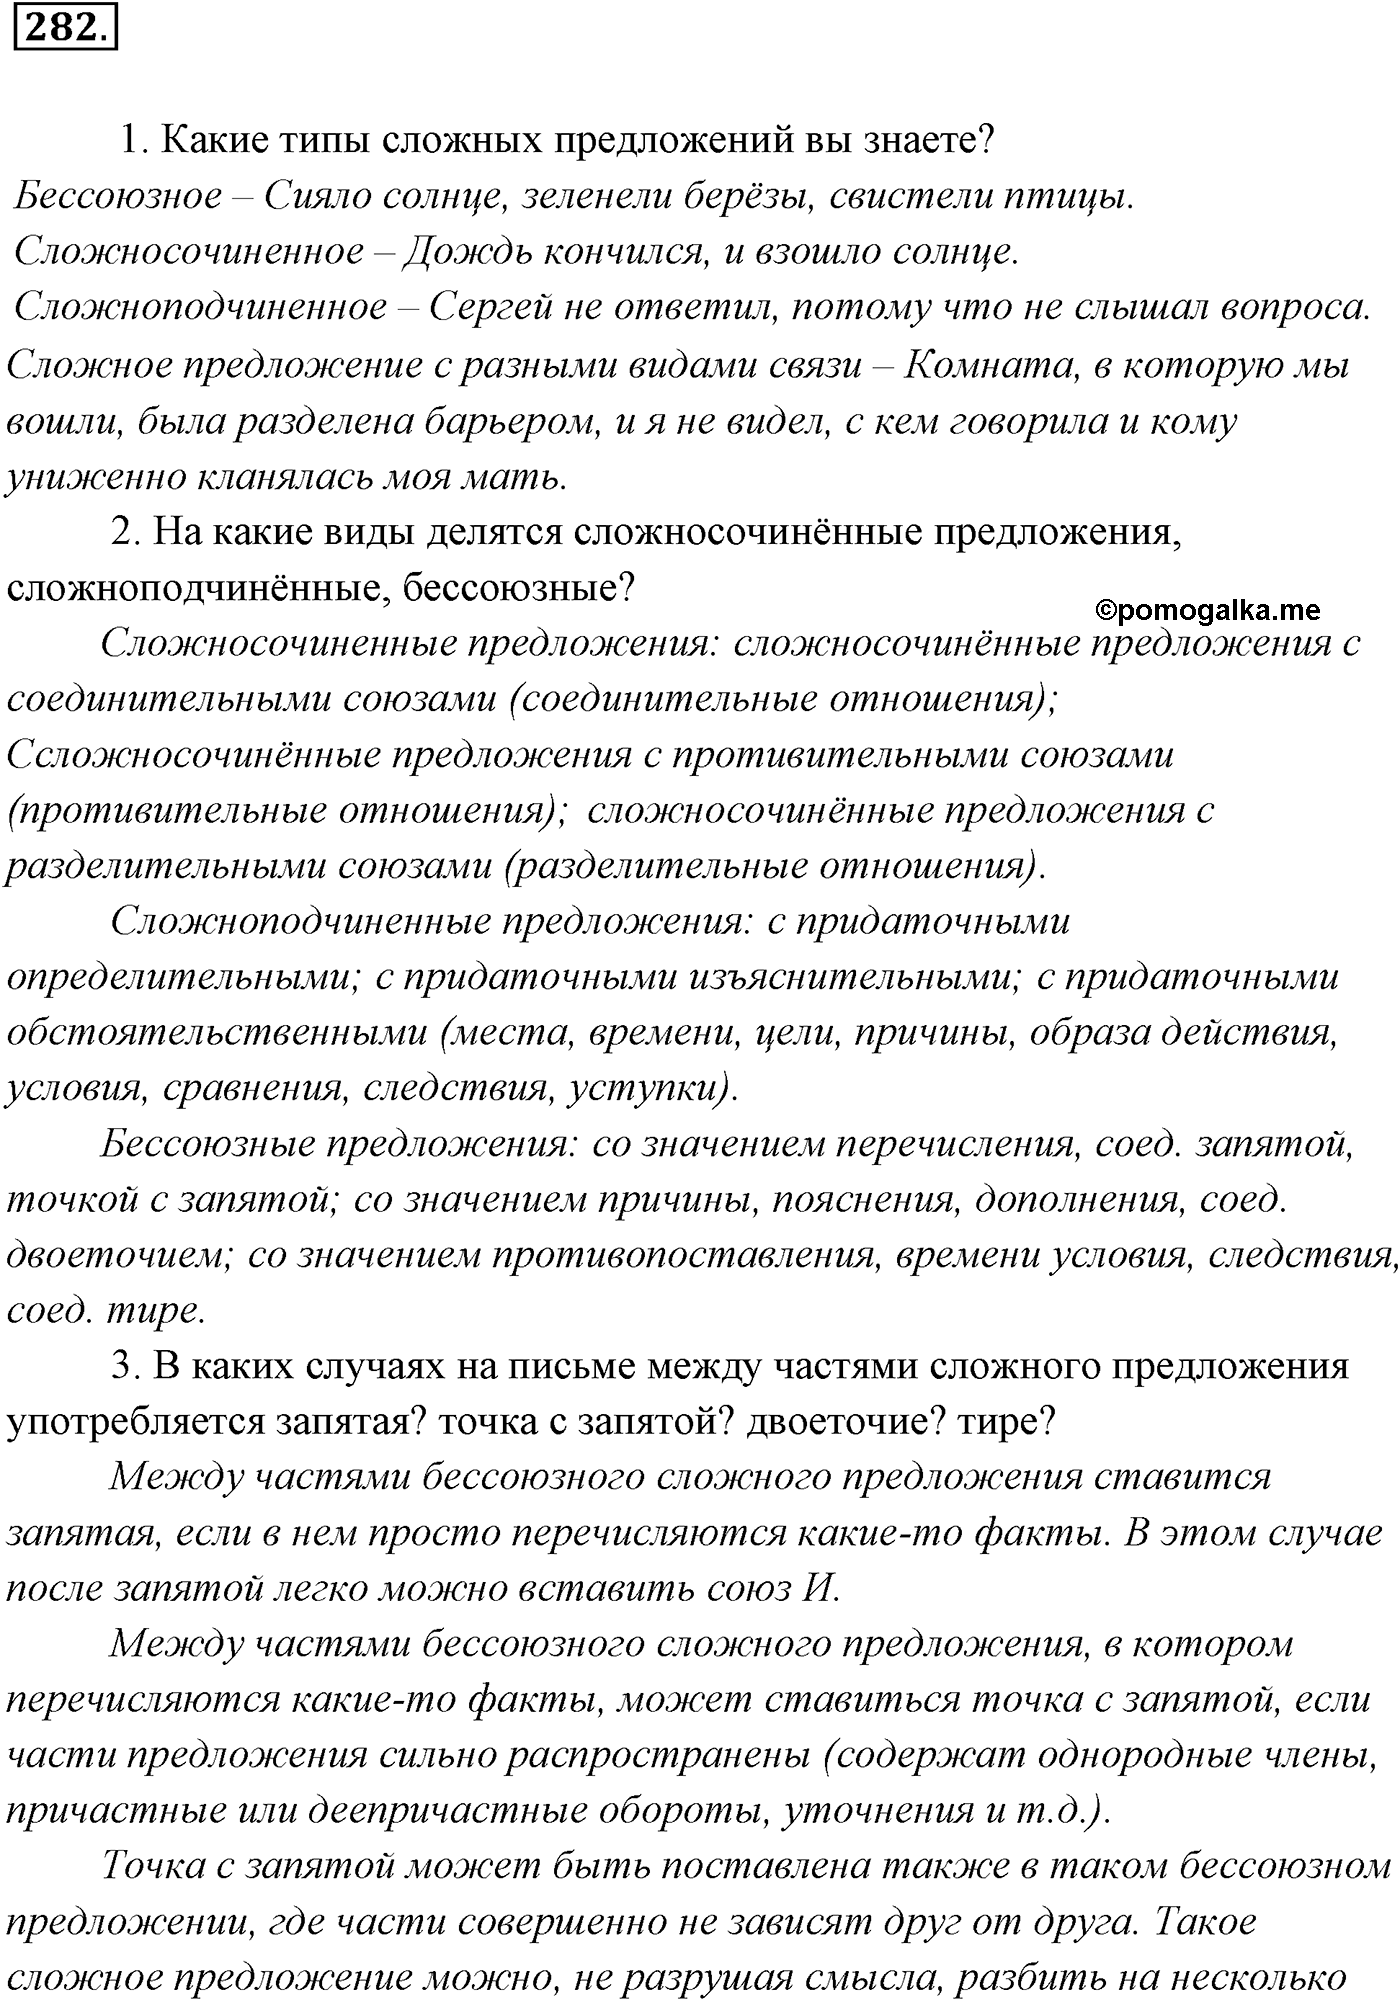 упражнение №282 русский язык 9 класс Разумовская